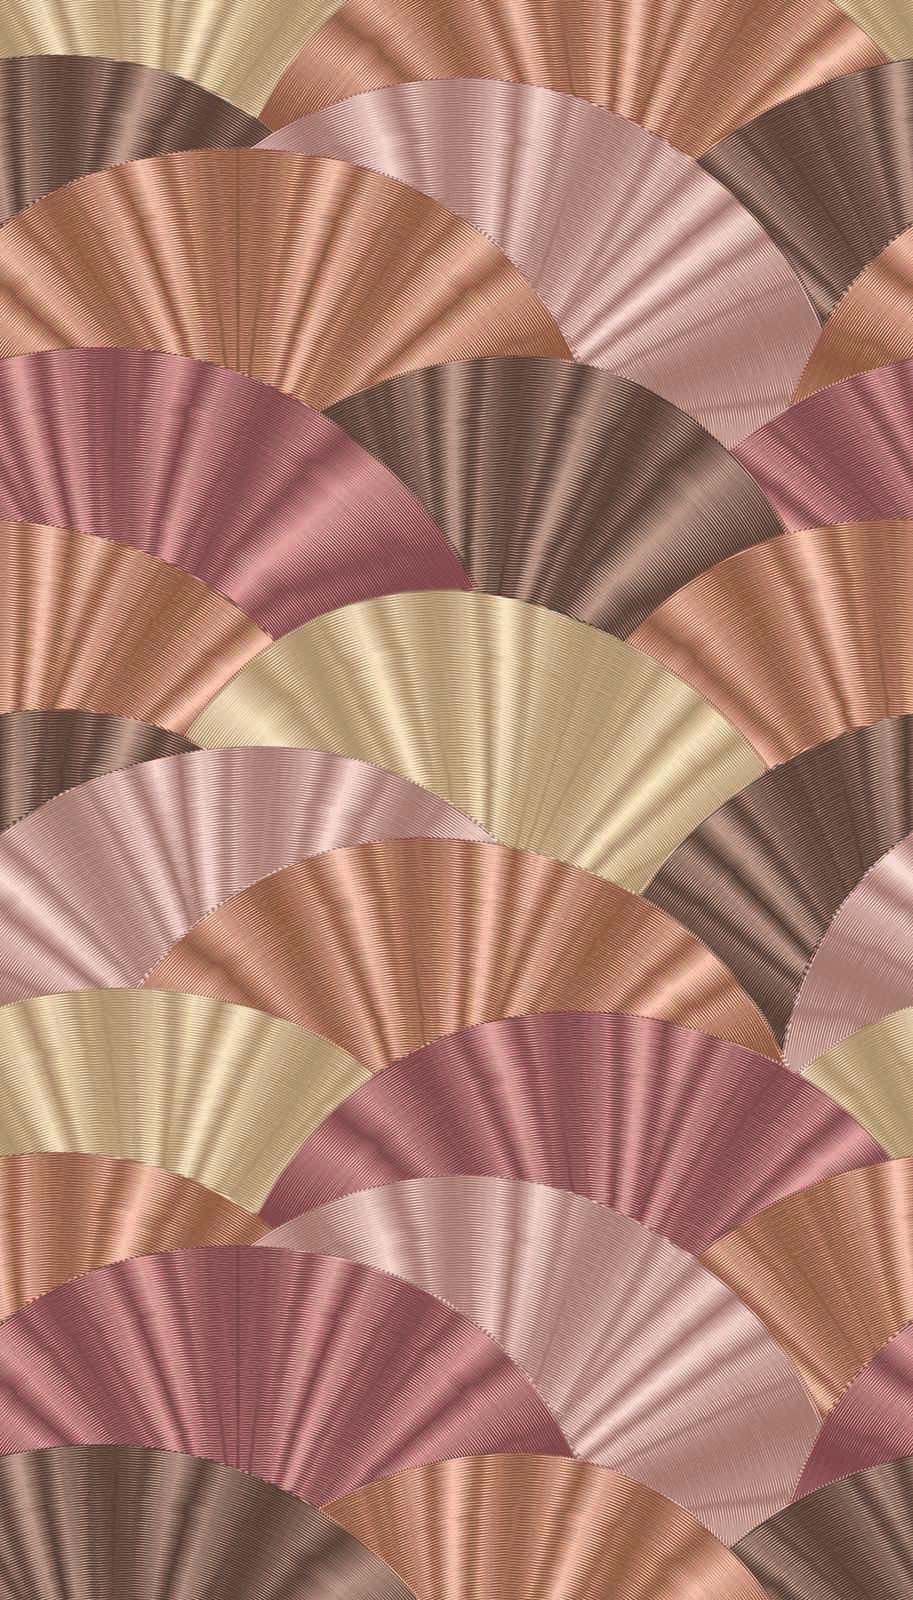             Carta da parati in tessuto non tessuto con motivo a ventaglio in tonalità tenui - rosa, crema, beige
        